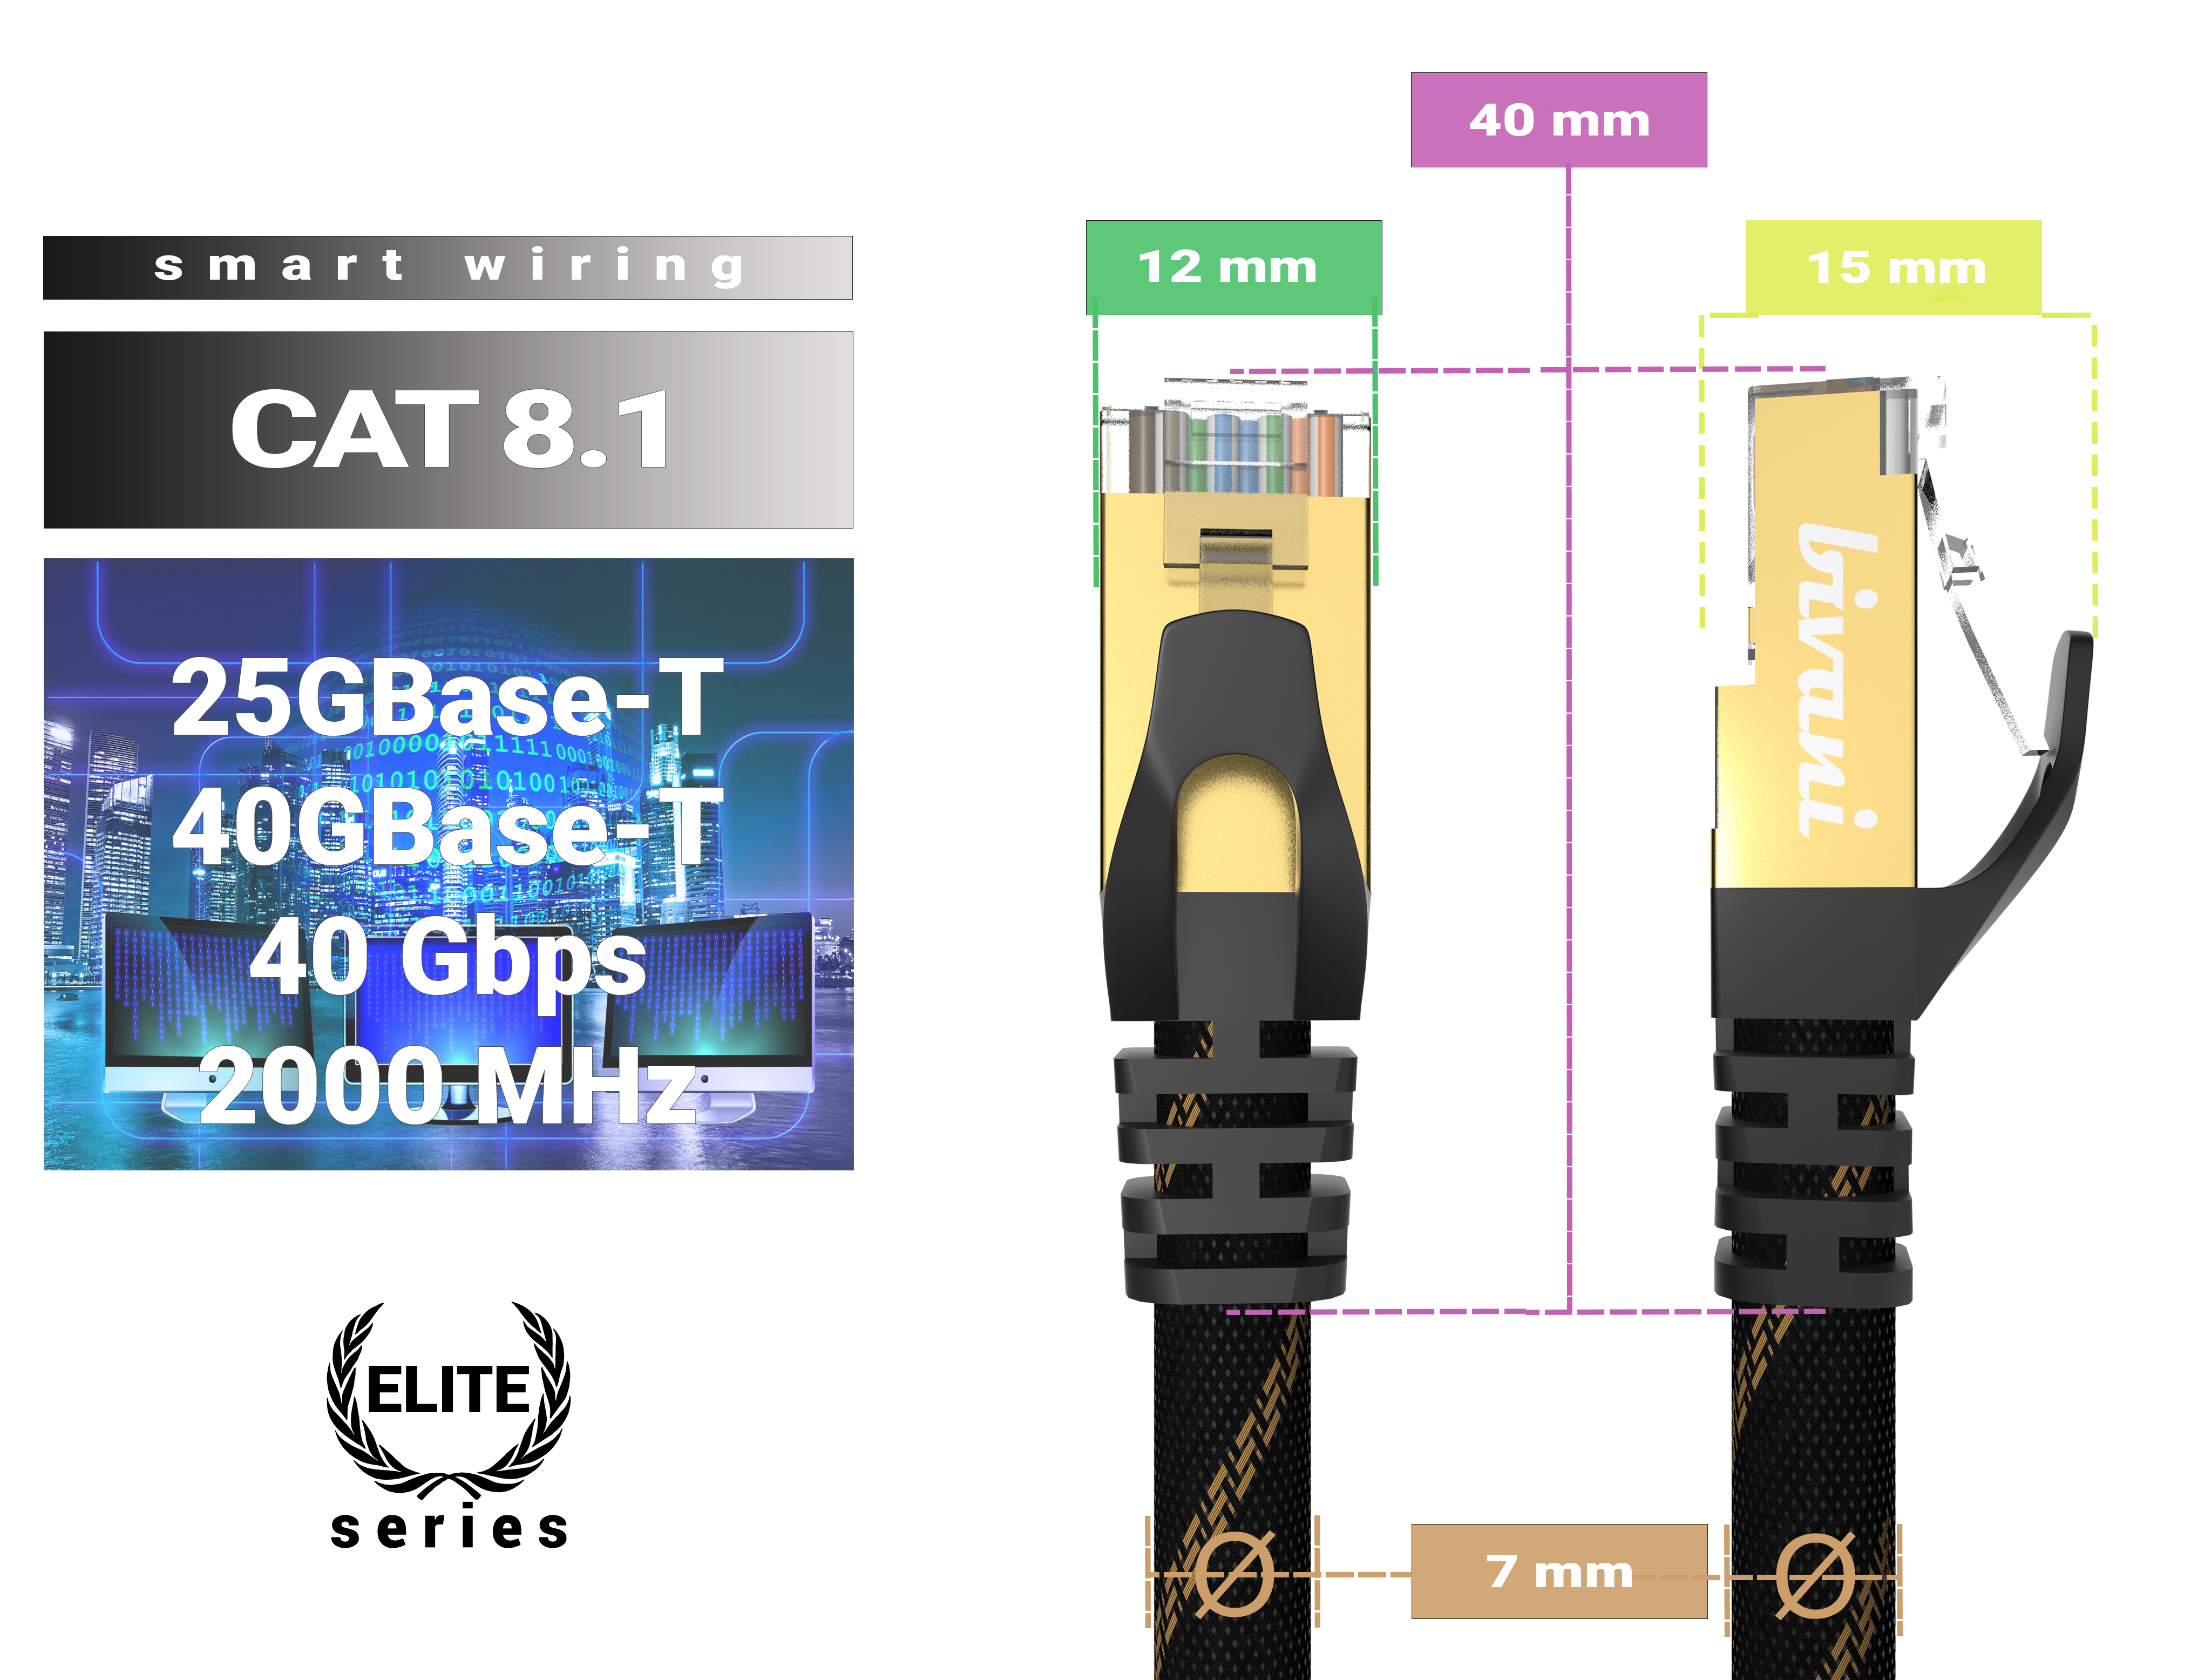 m 3 - Kabel 8.1 CAT BIVANI Premium 40 Elite-Series, LAN Netzwerkkabel, Gbps